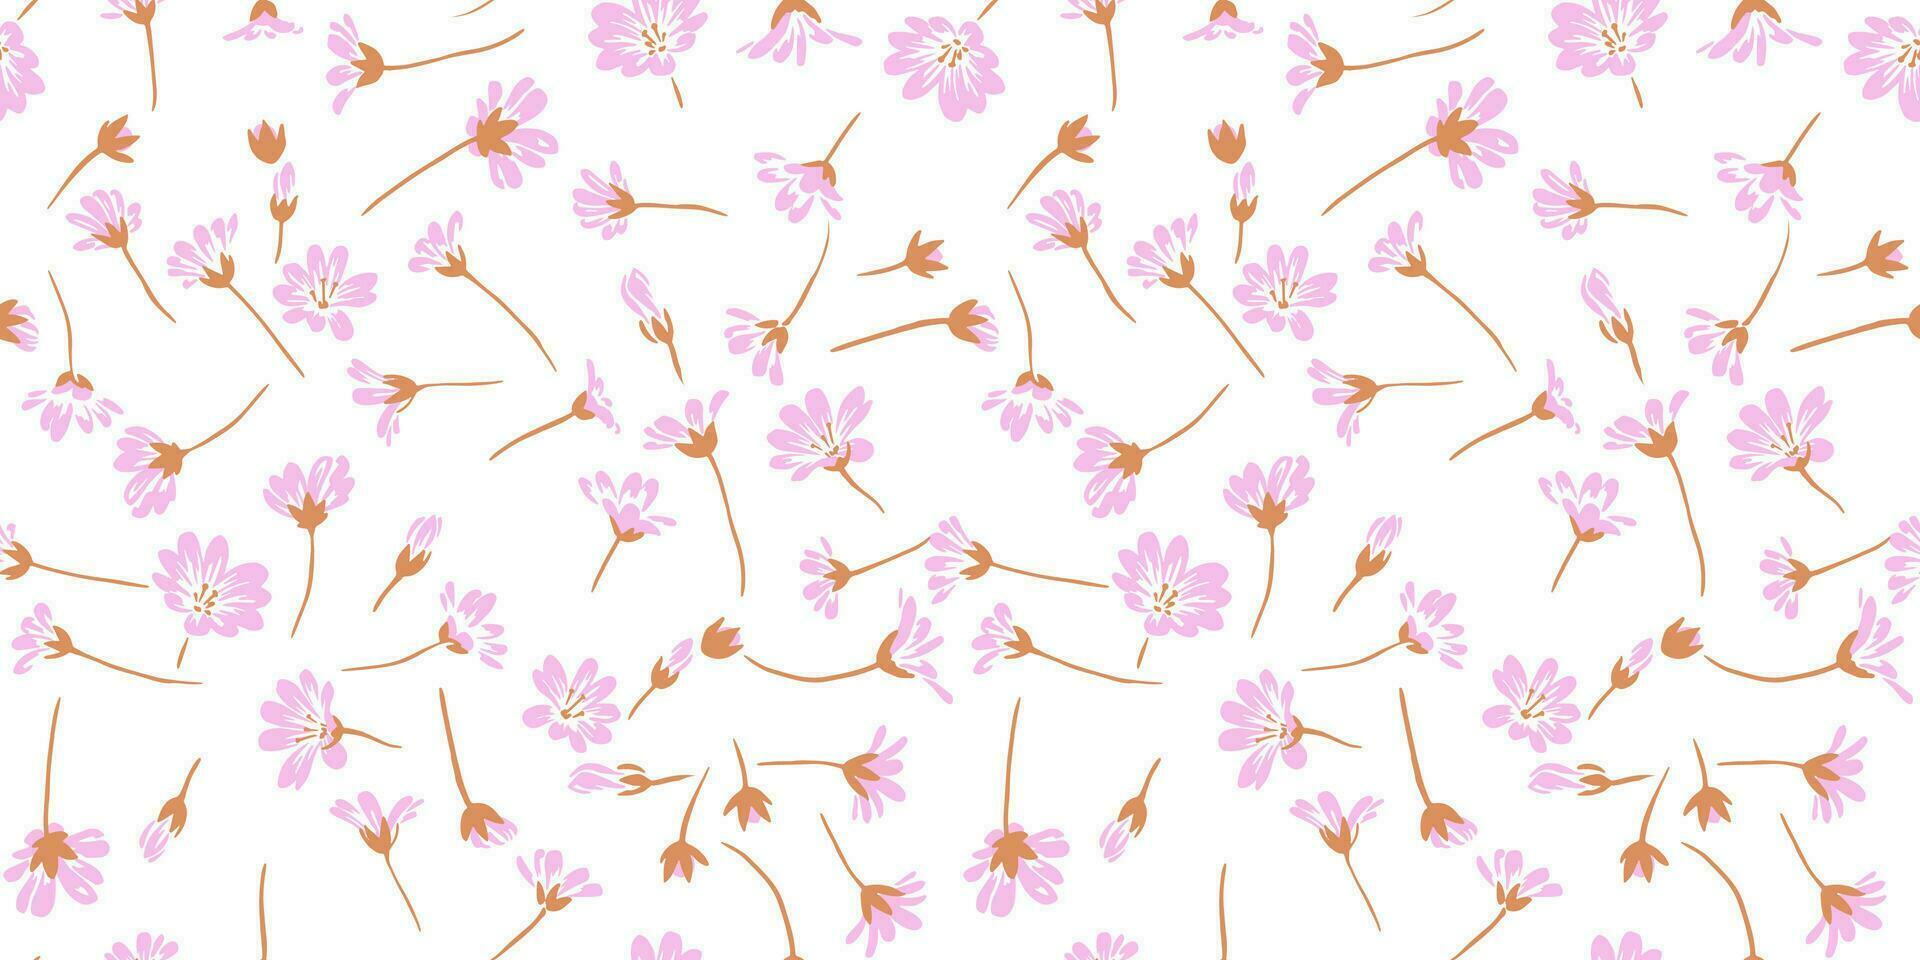 sanft Eleganz einfach Blumen- nahtlos Muster auf ein Weiß Hintergrund. Vektor Hand gezeichnet skizzieren. kreativ winzig gestalten wild Blumen. Design zum Mode, Stoff, und Textil.